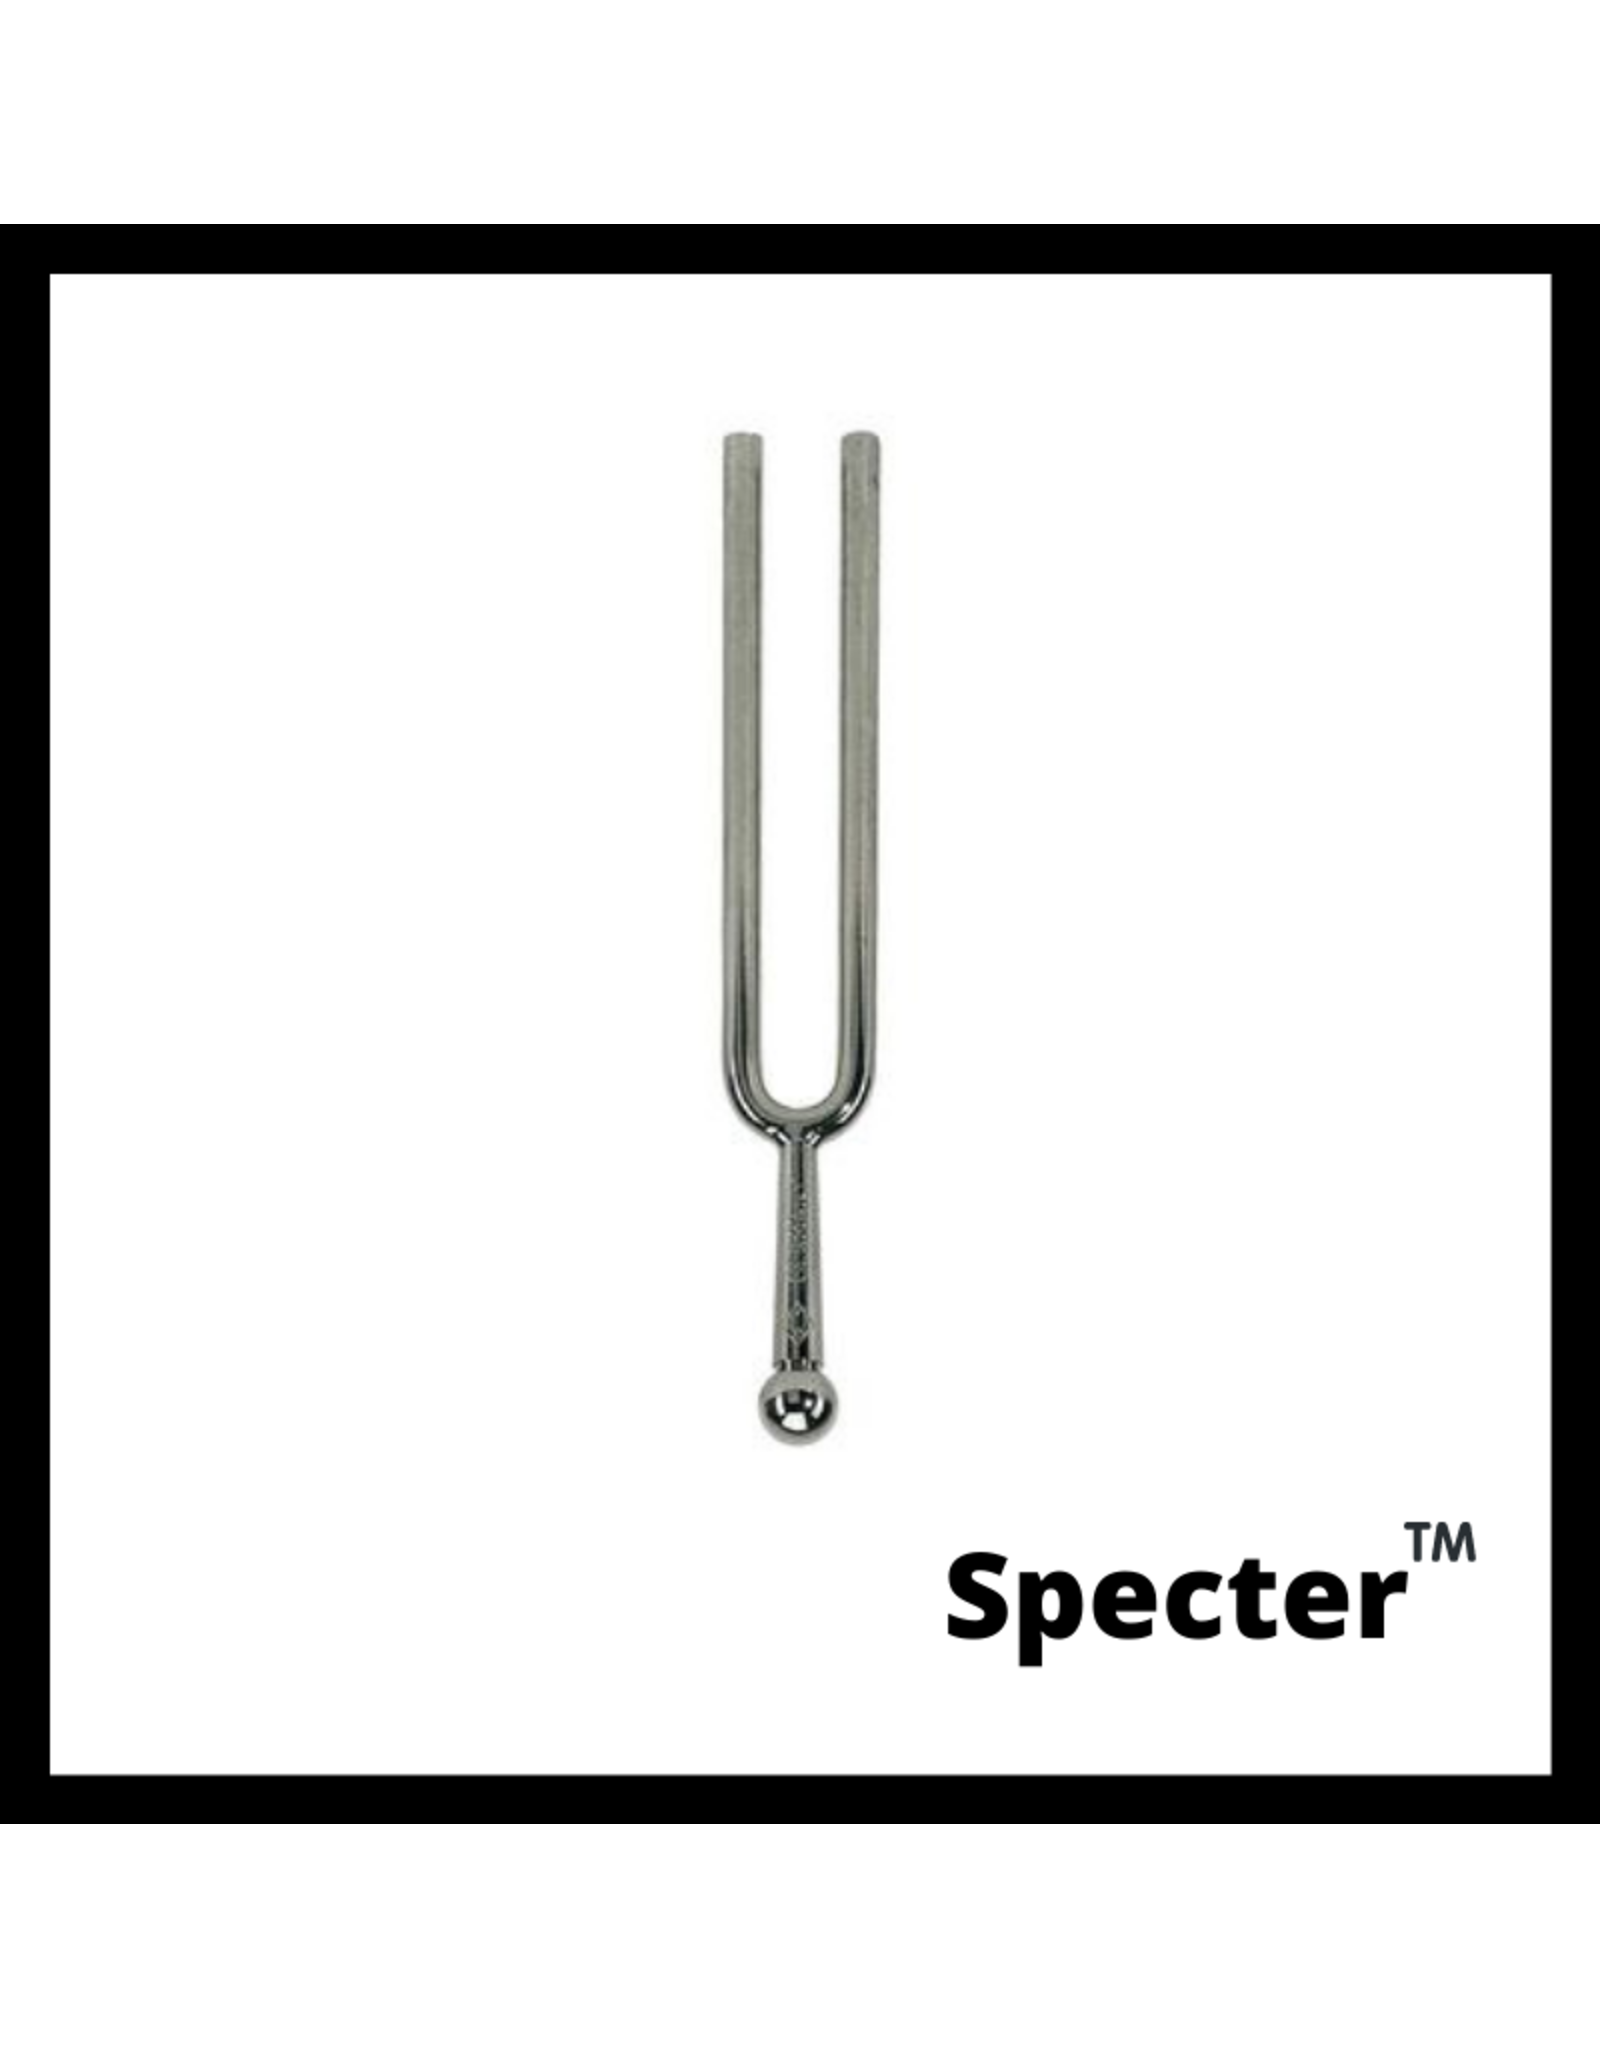 Specter Specter stemvork a1-440.0 Hz.